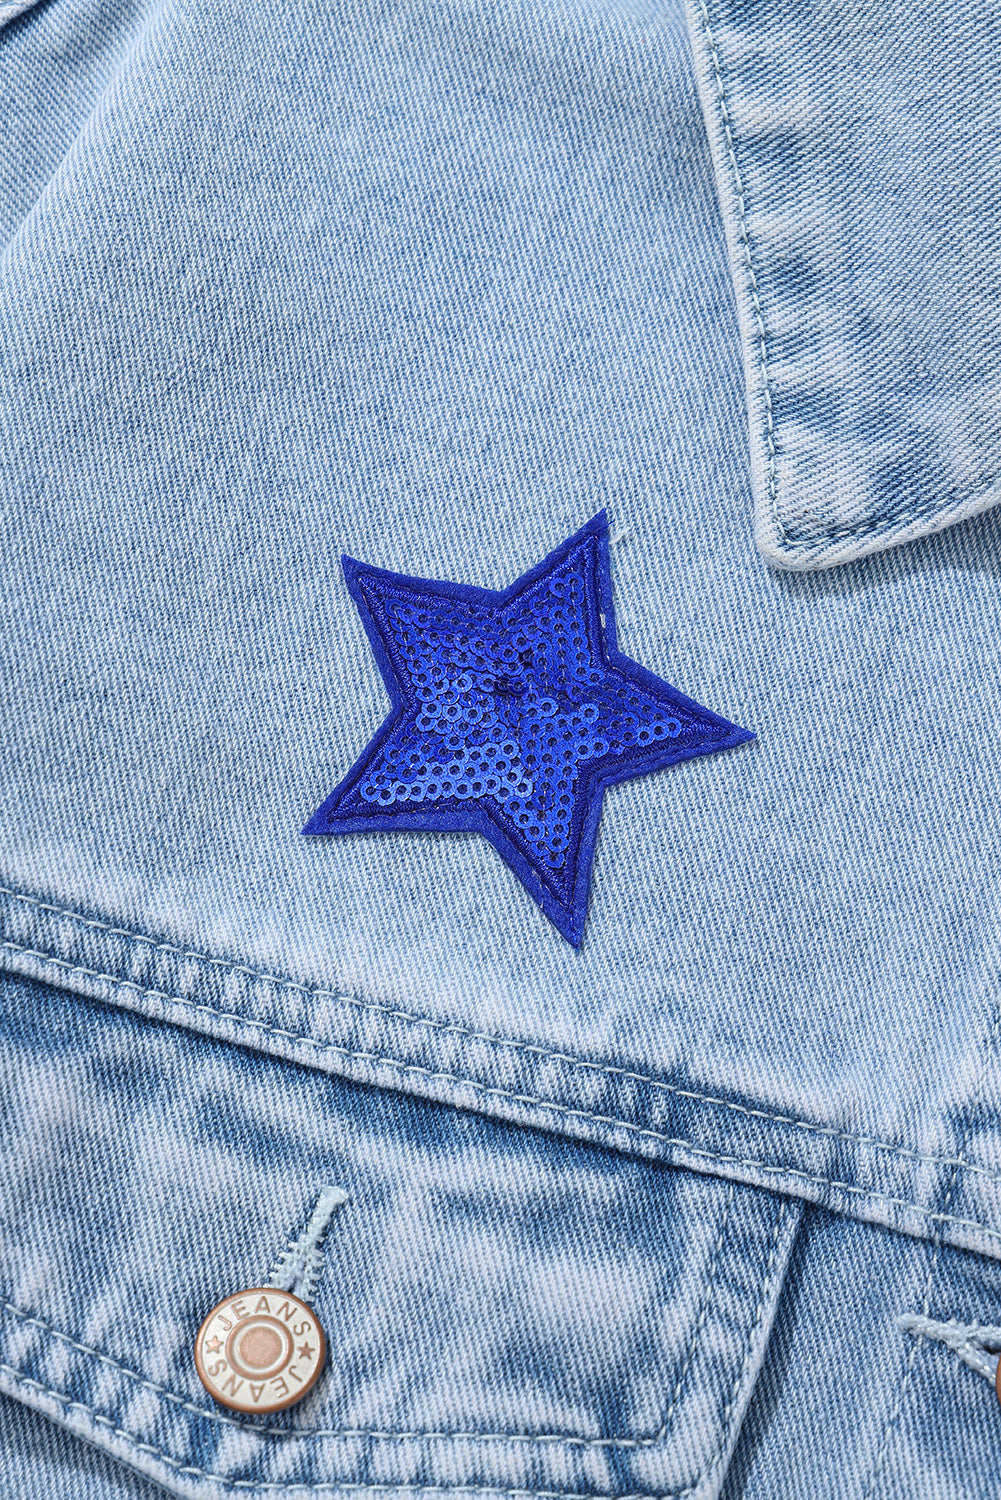 Bläuliche Jeansjacke mit Sternen und Pattentaschen und Pailletten